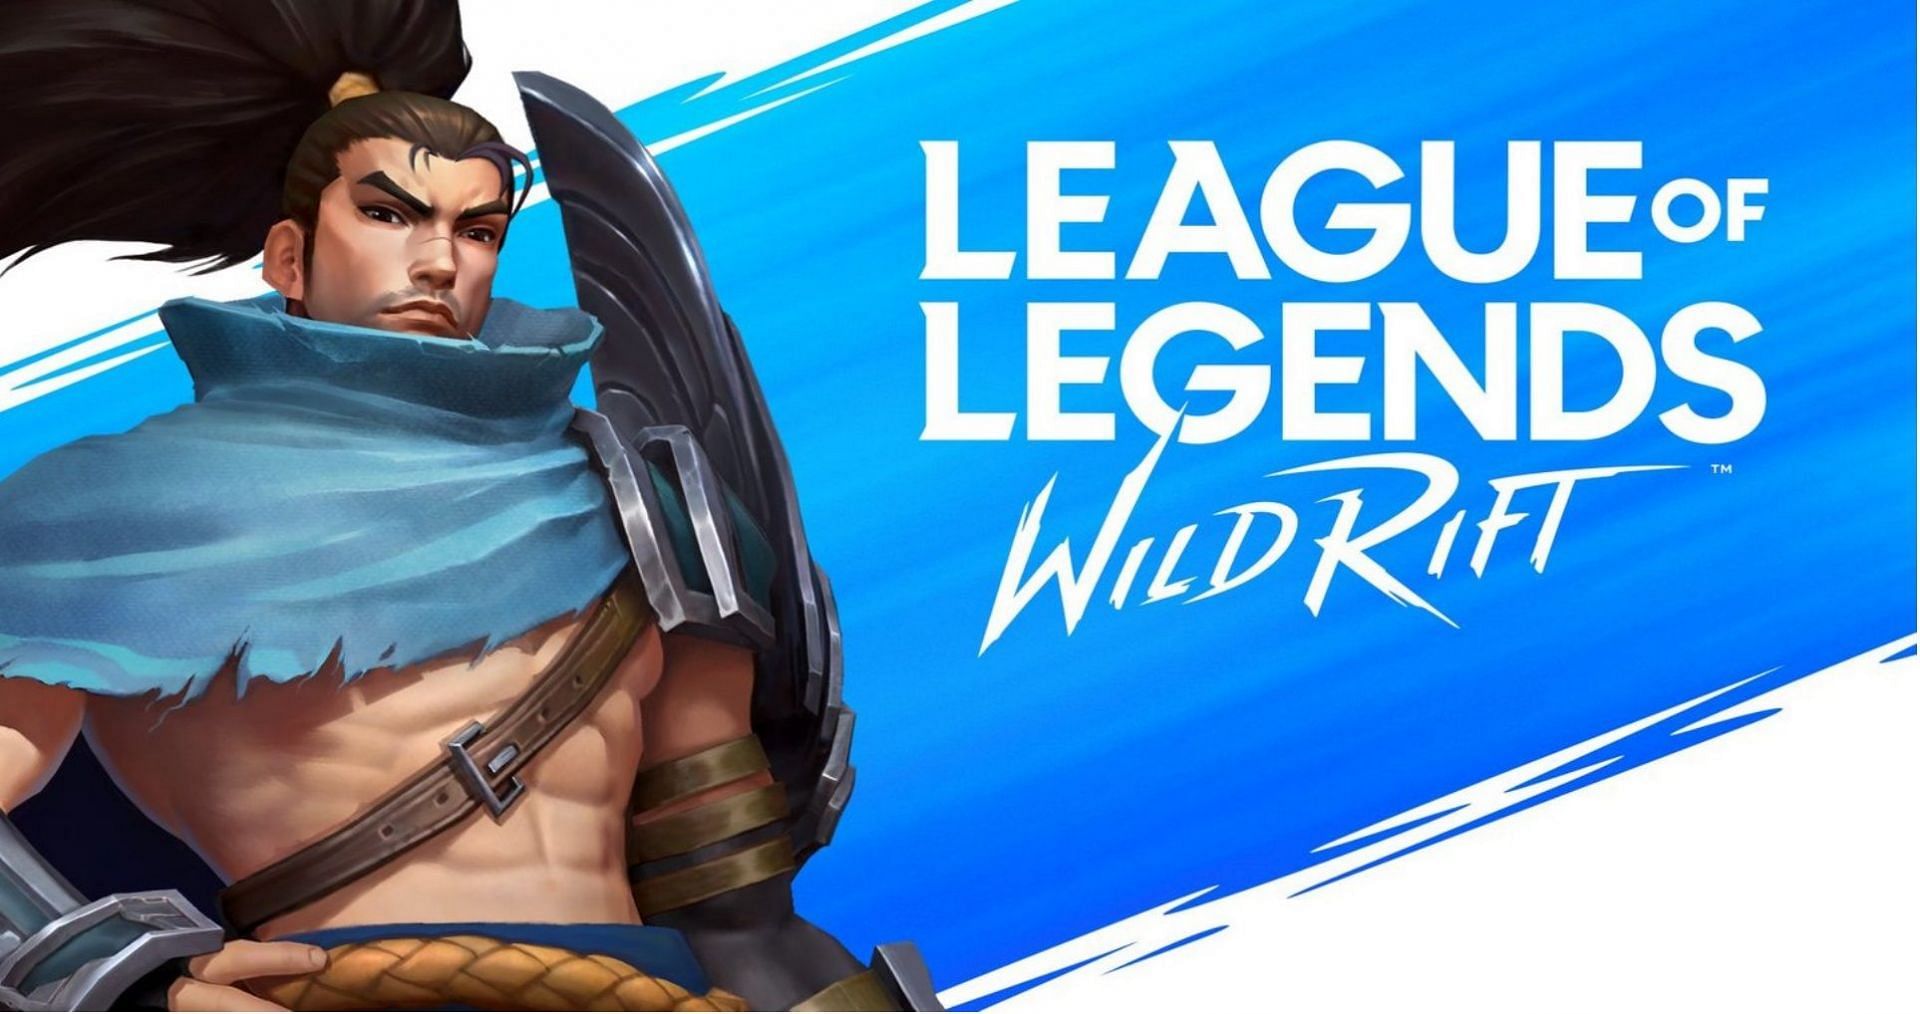 League of Legends: Wild Rift Tier List December 2023 - News